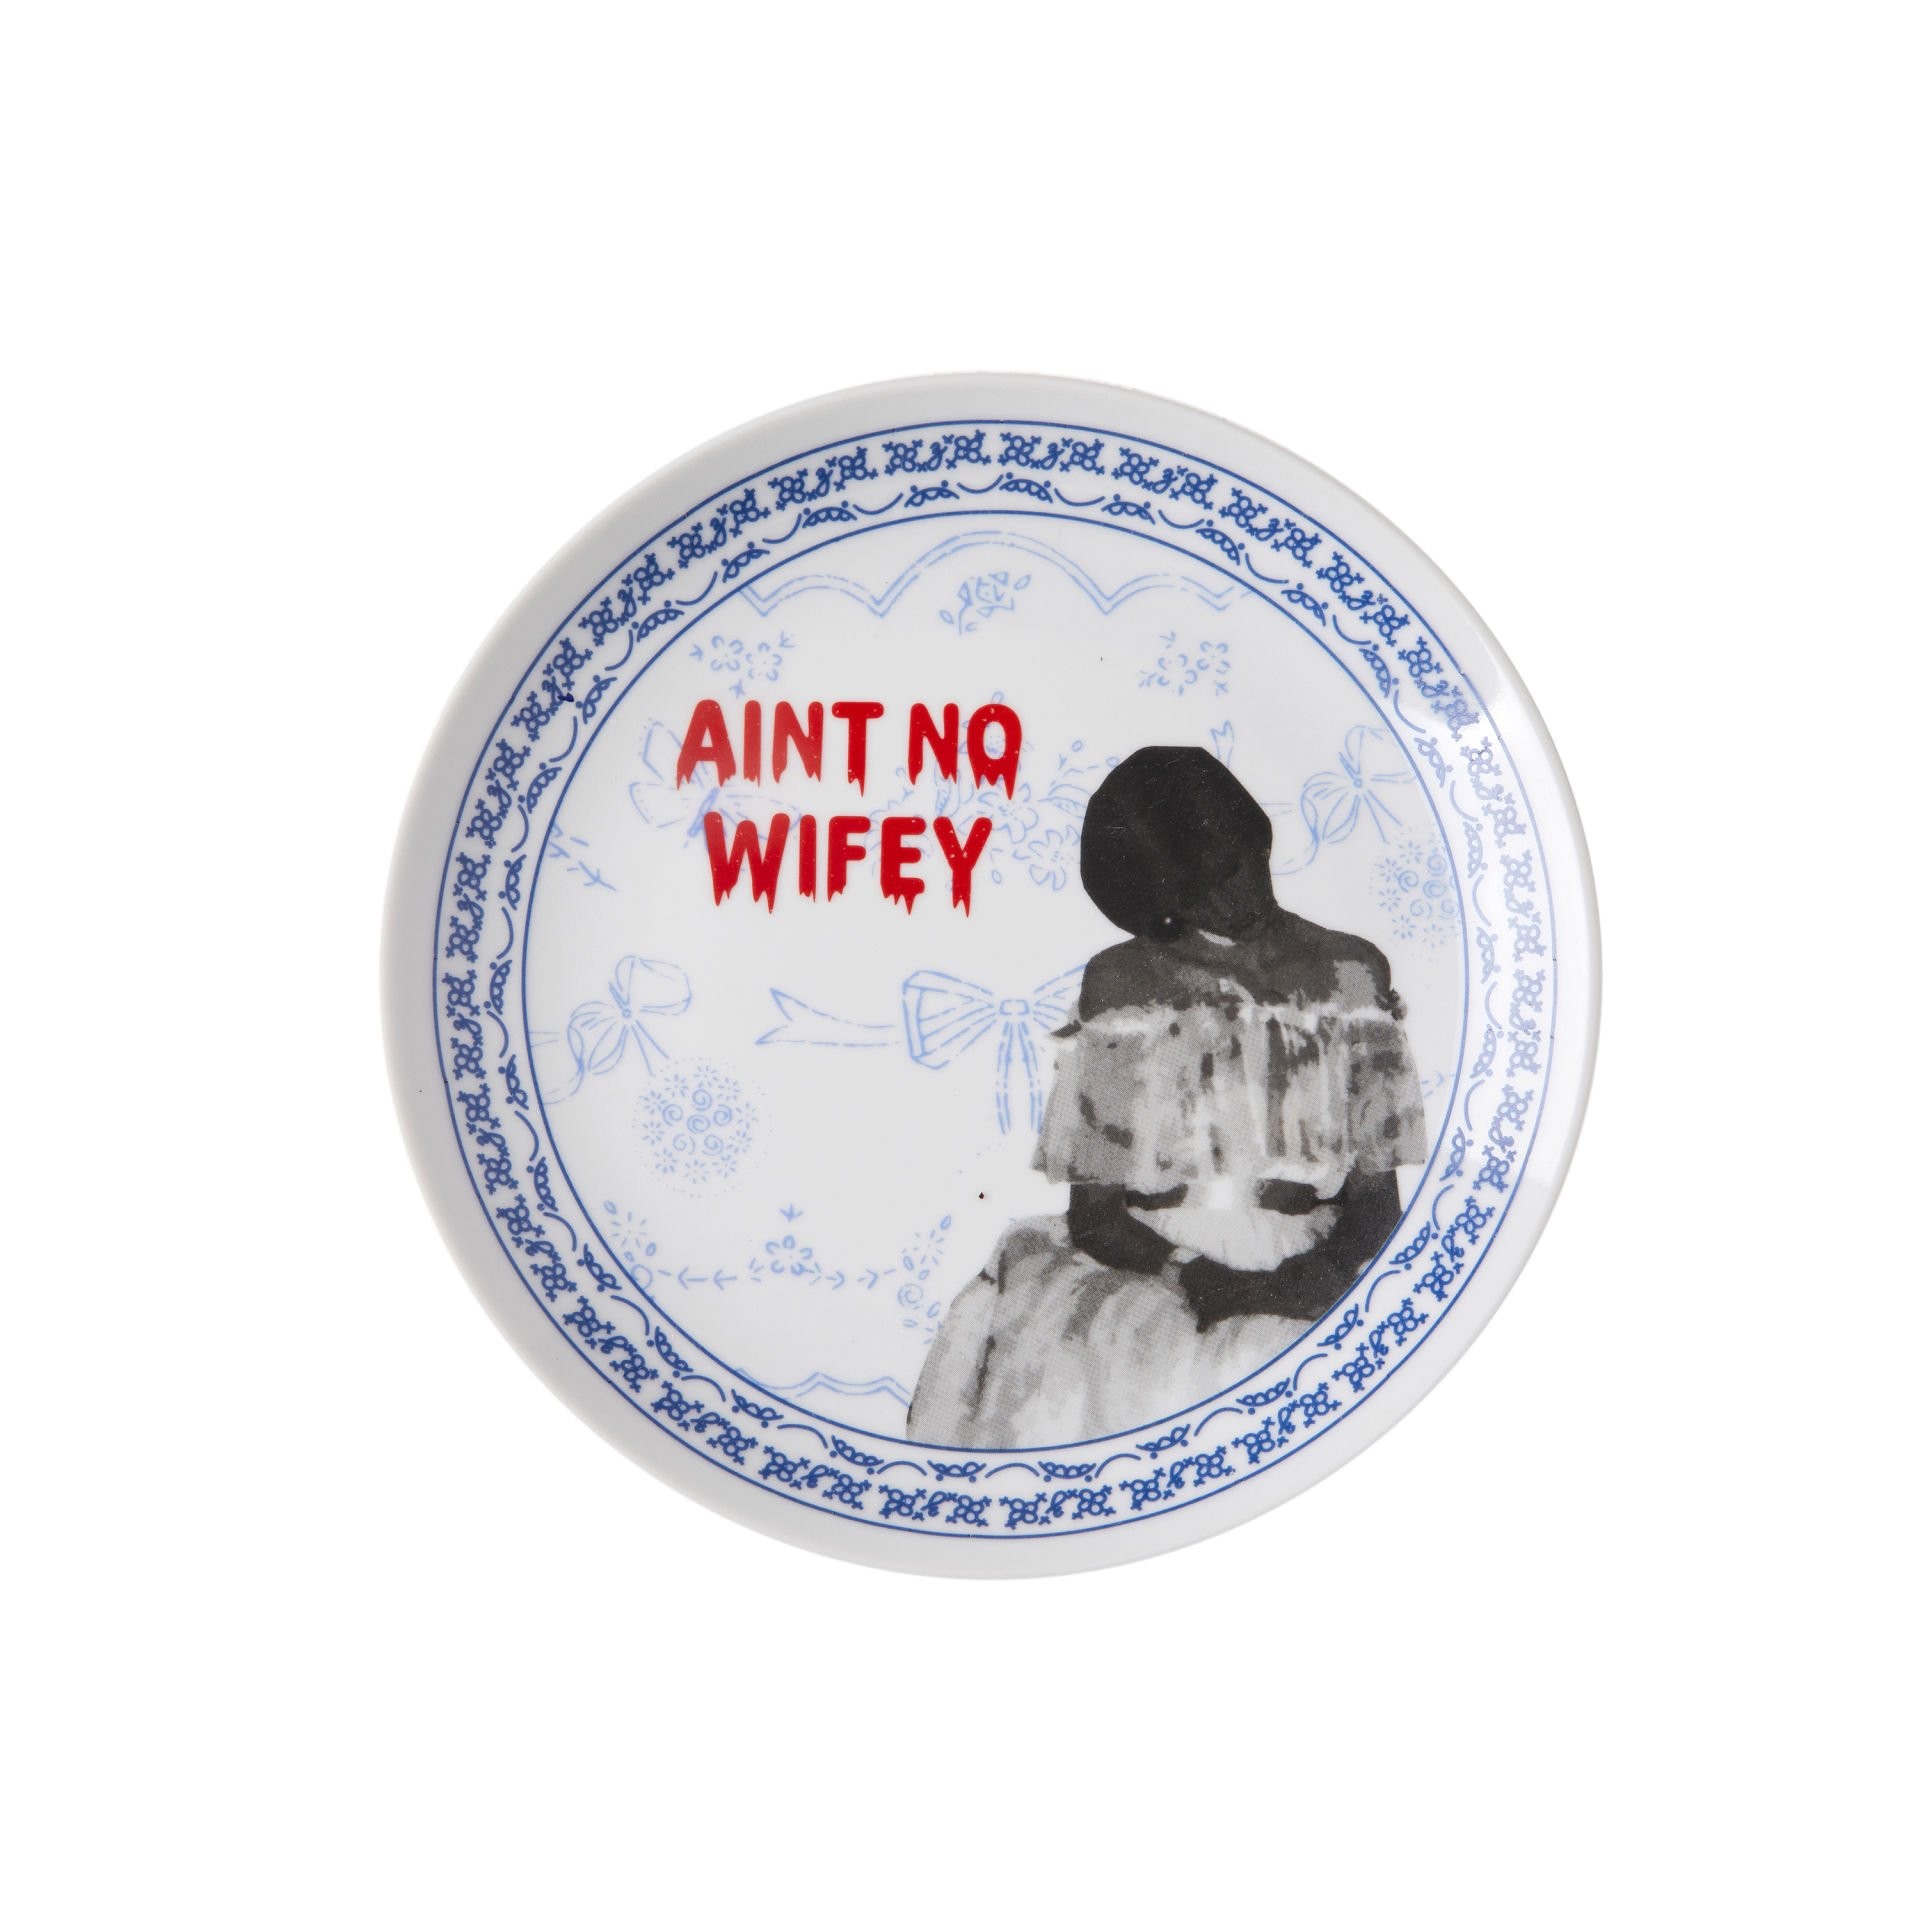 Aint No Wifey' Tabak